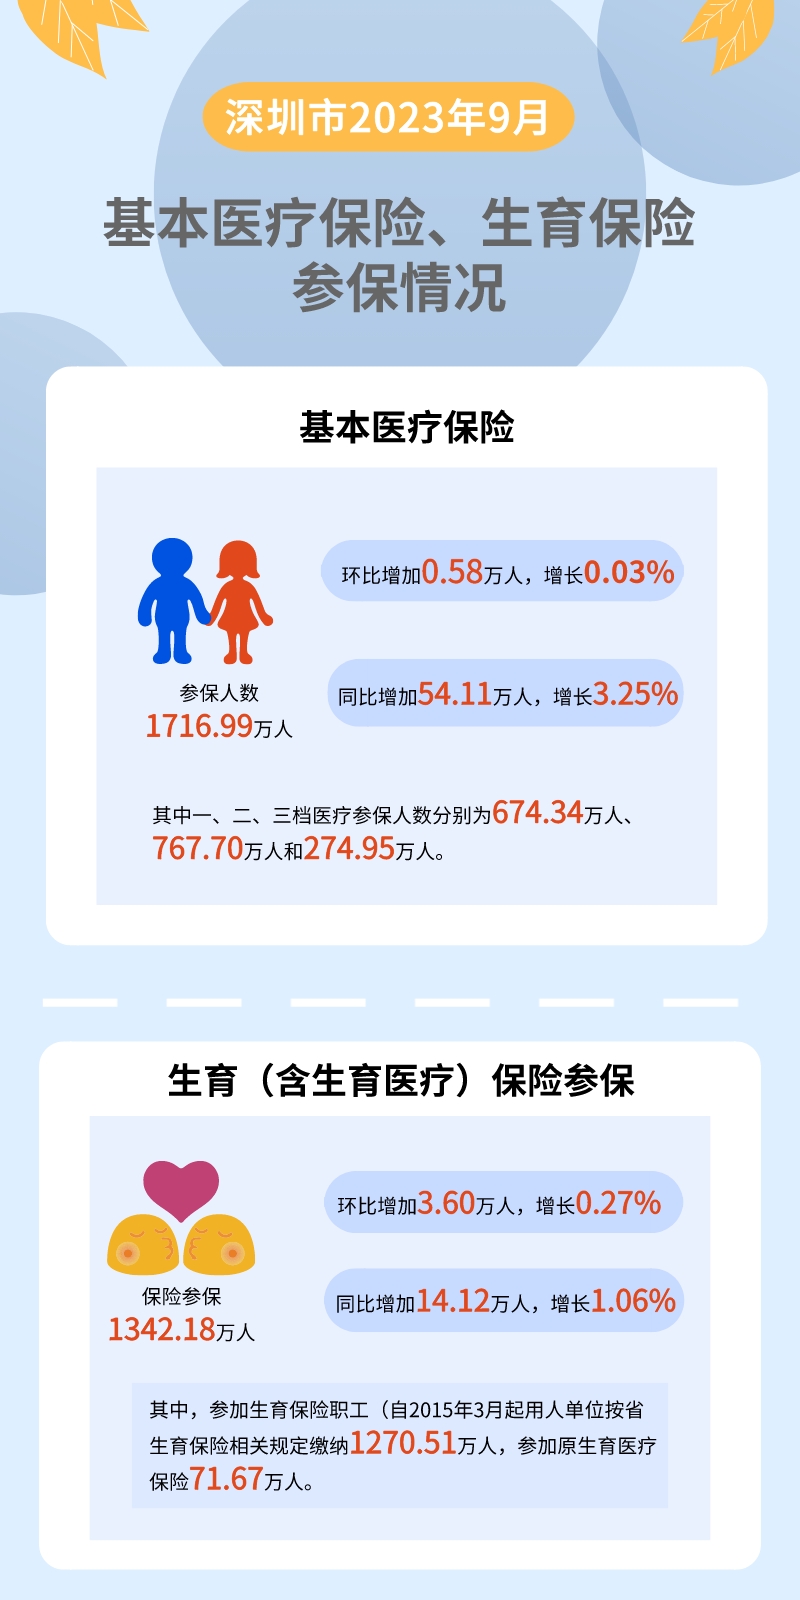 深圳市2023年9月基本医疗保险、生育保险参保情况概述.jpeg